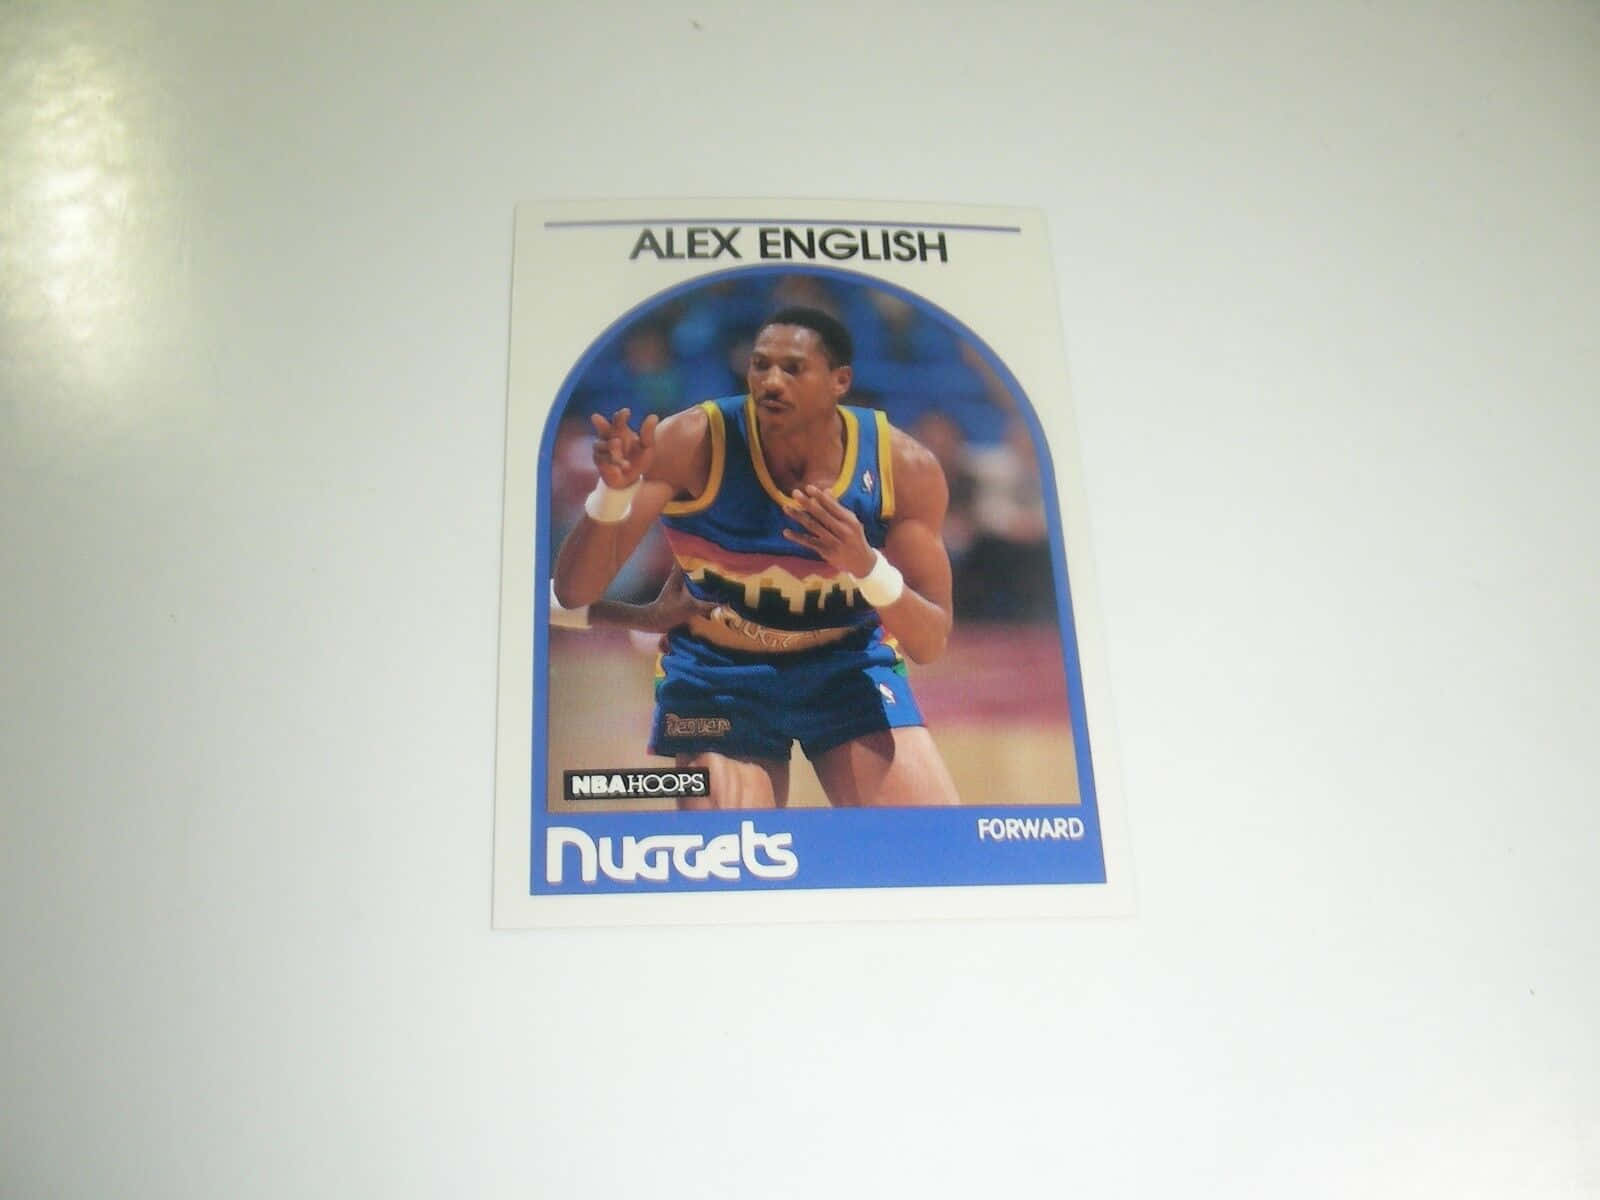 Alexenglisch 1989 Nba Hoops Basketballkarte Wallpaper